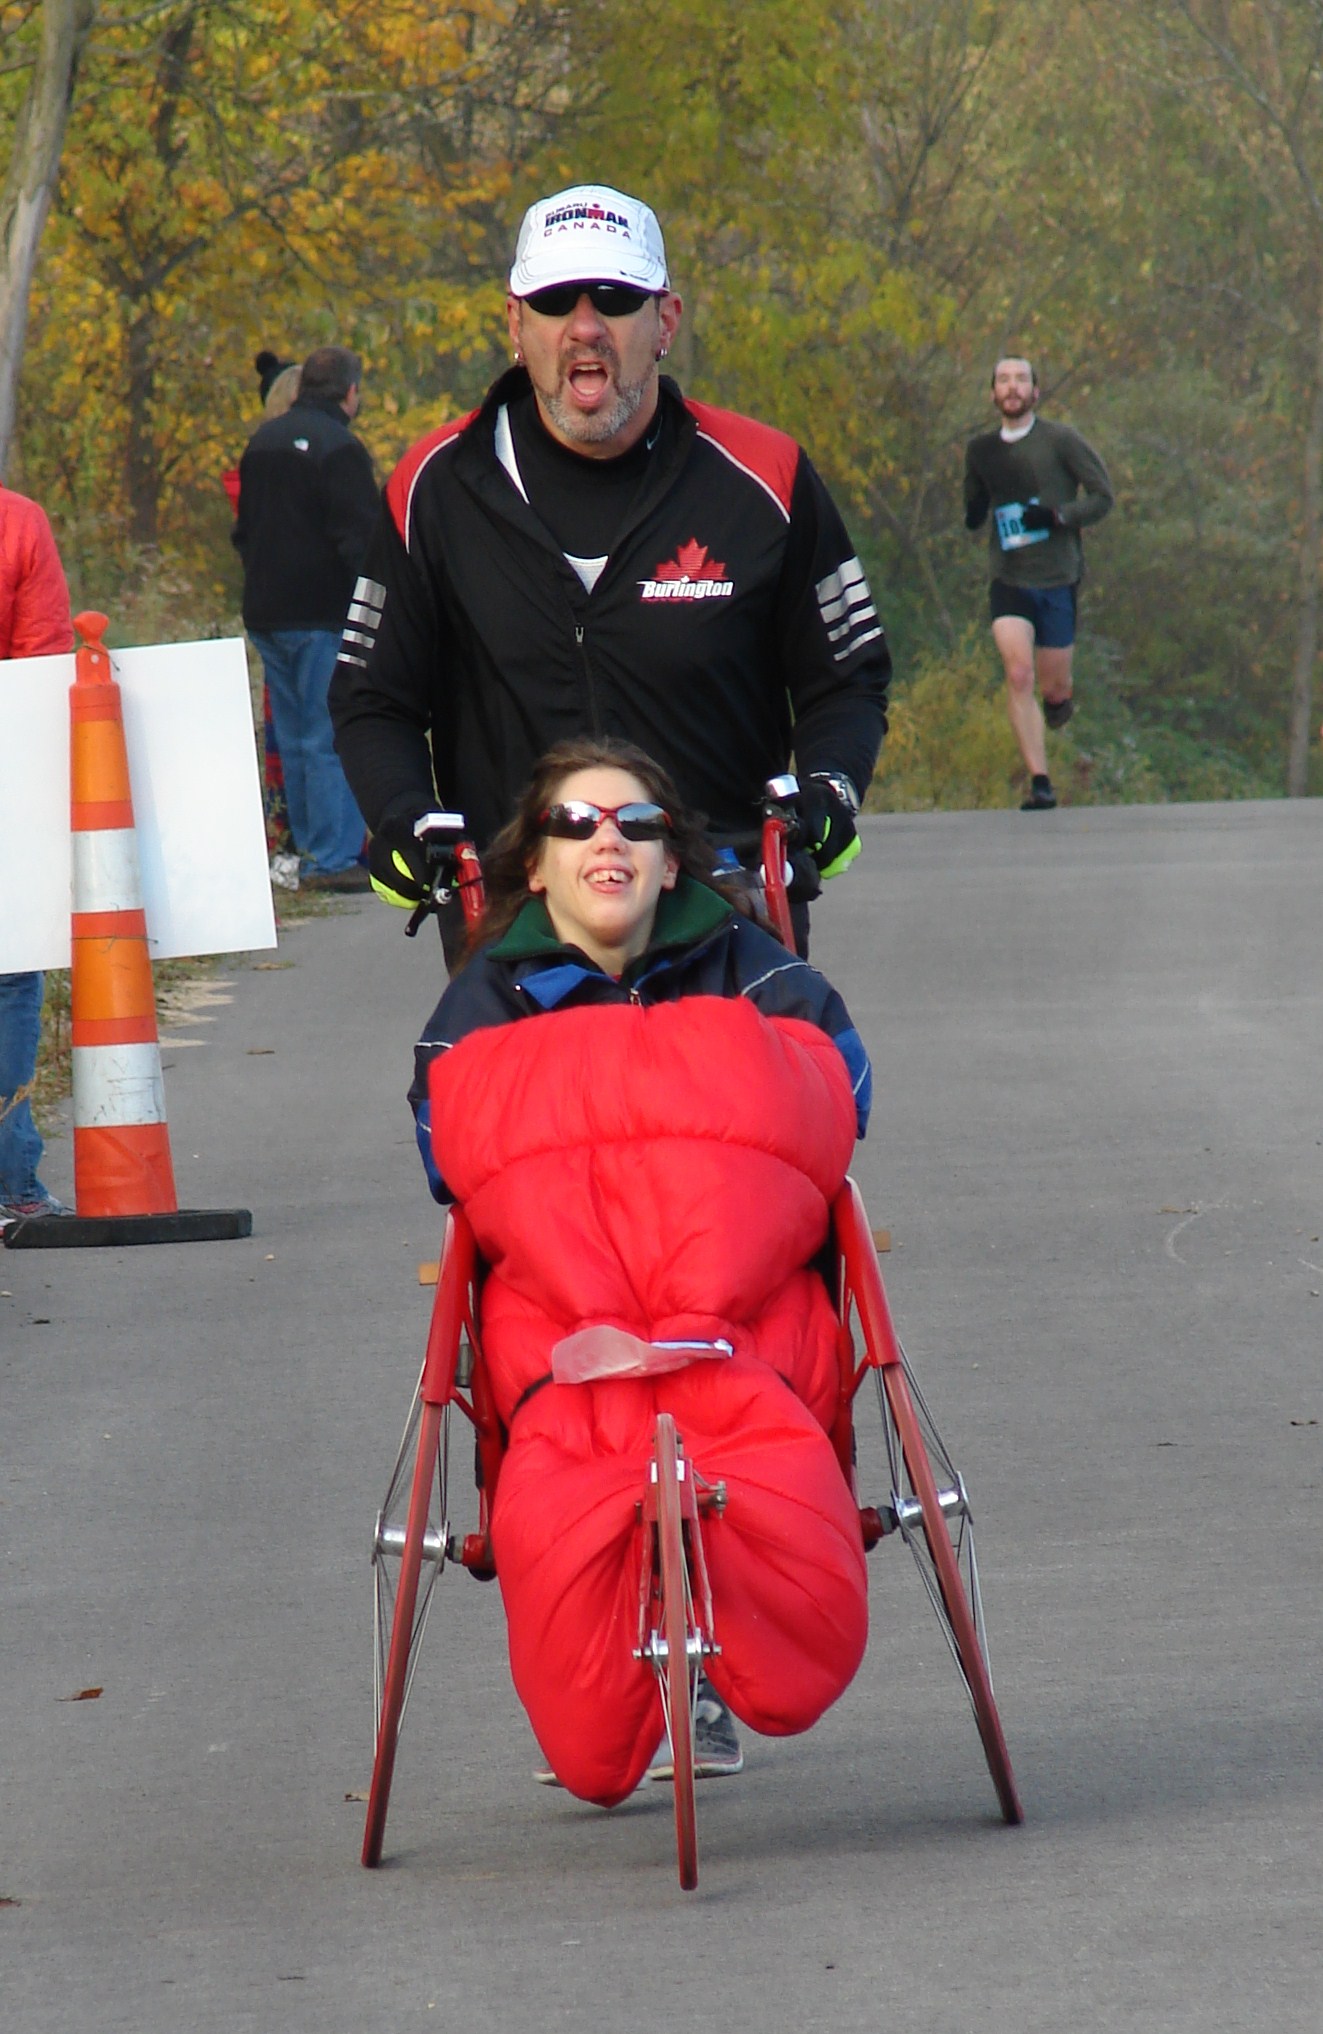 Grand Rapids Marathon - October 18, 2009